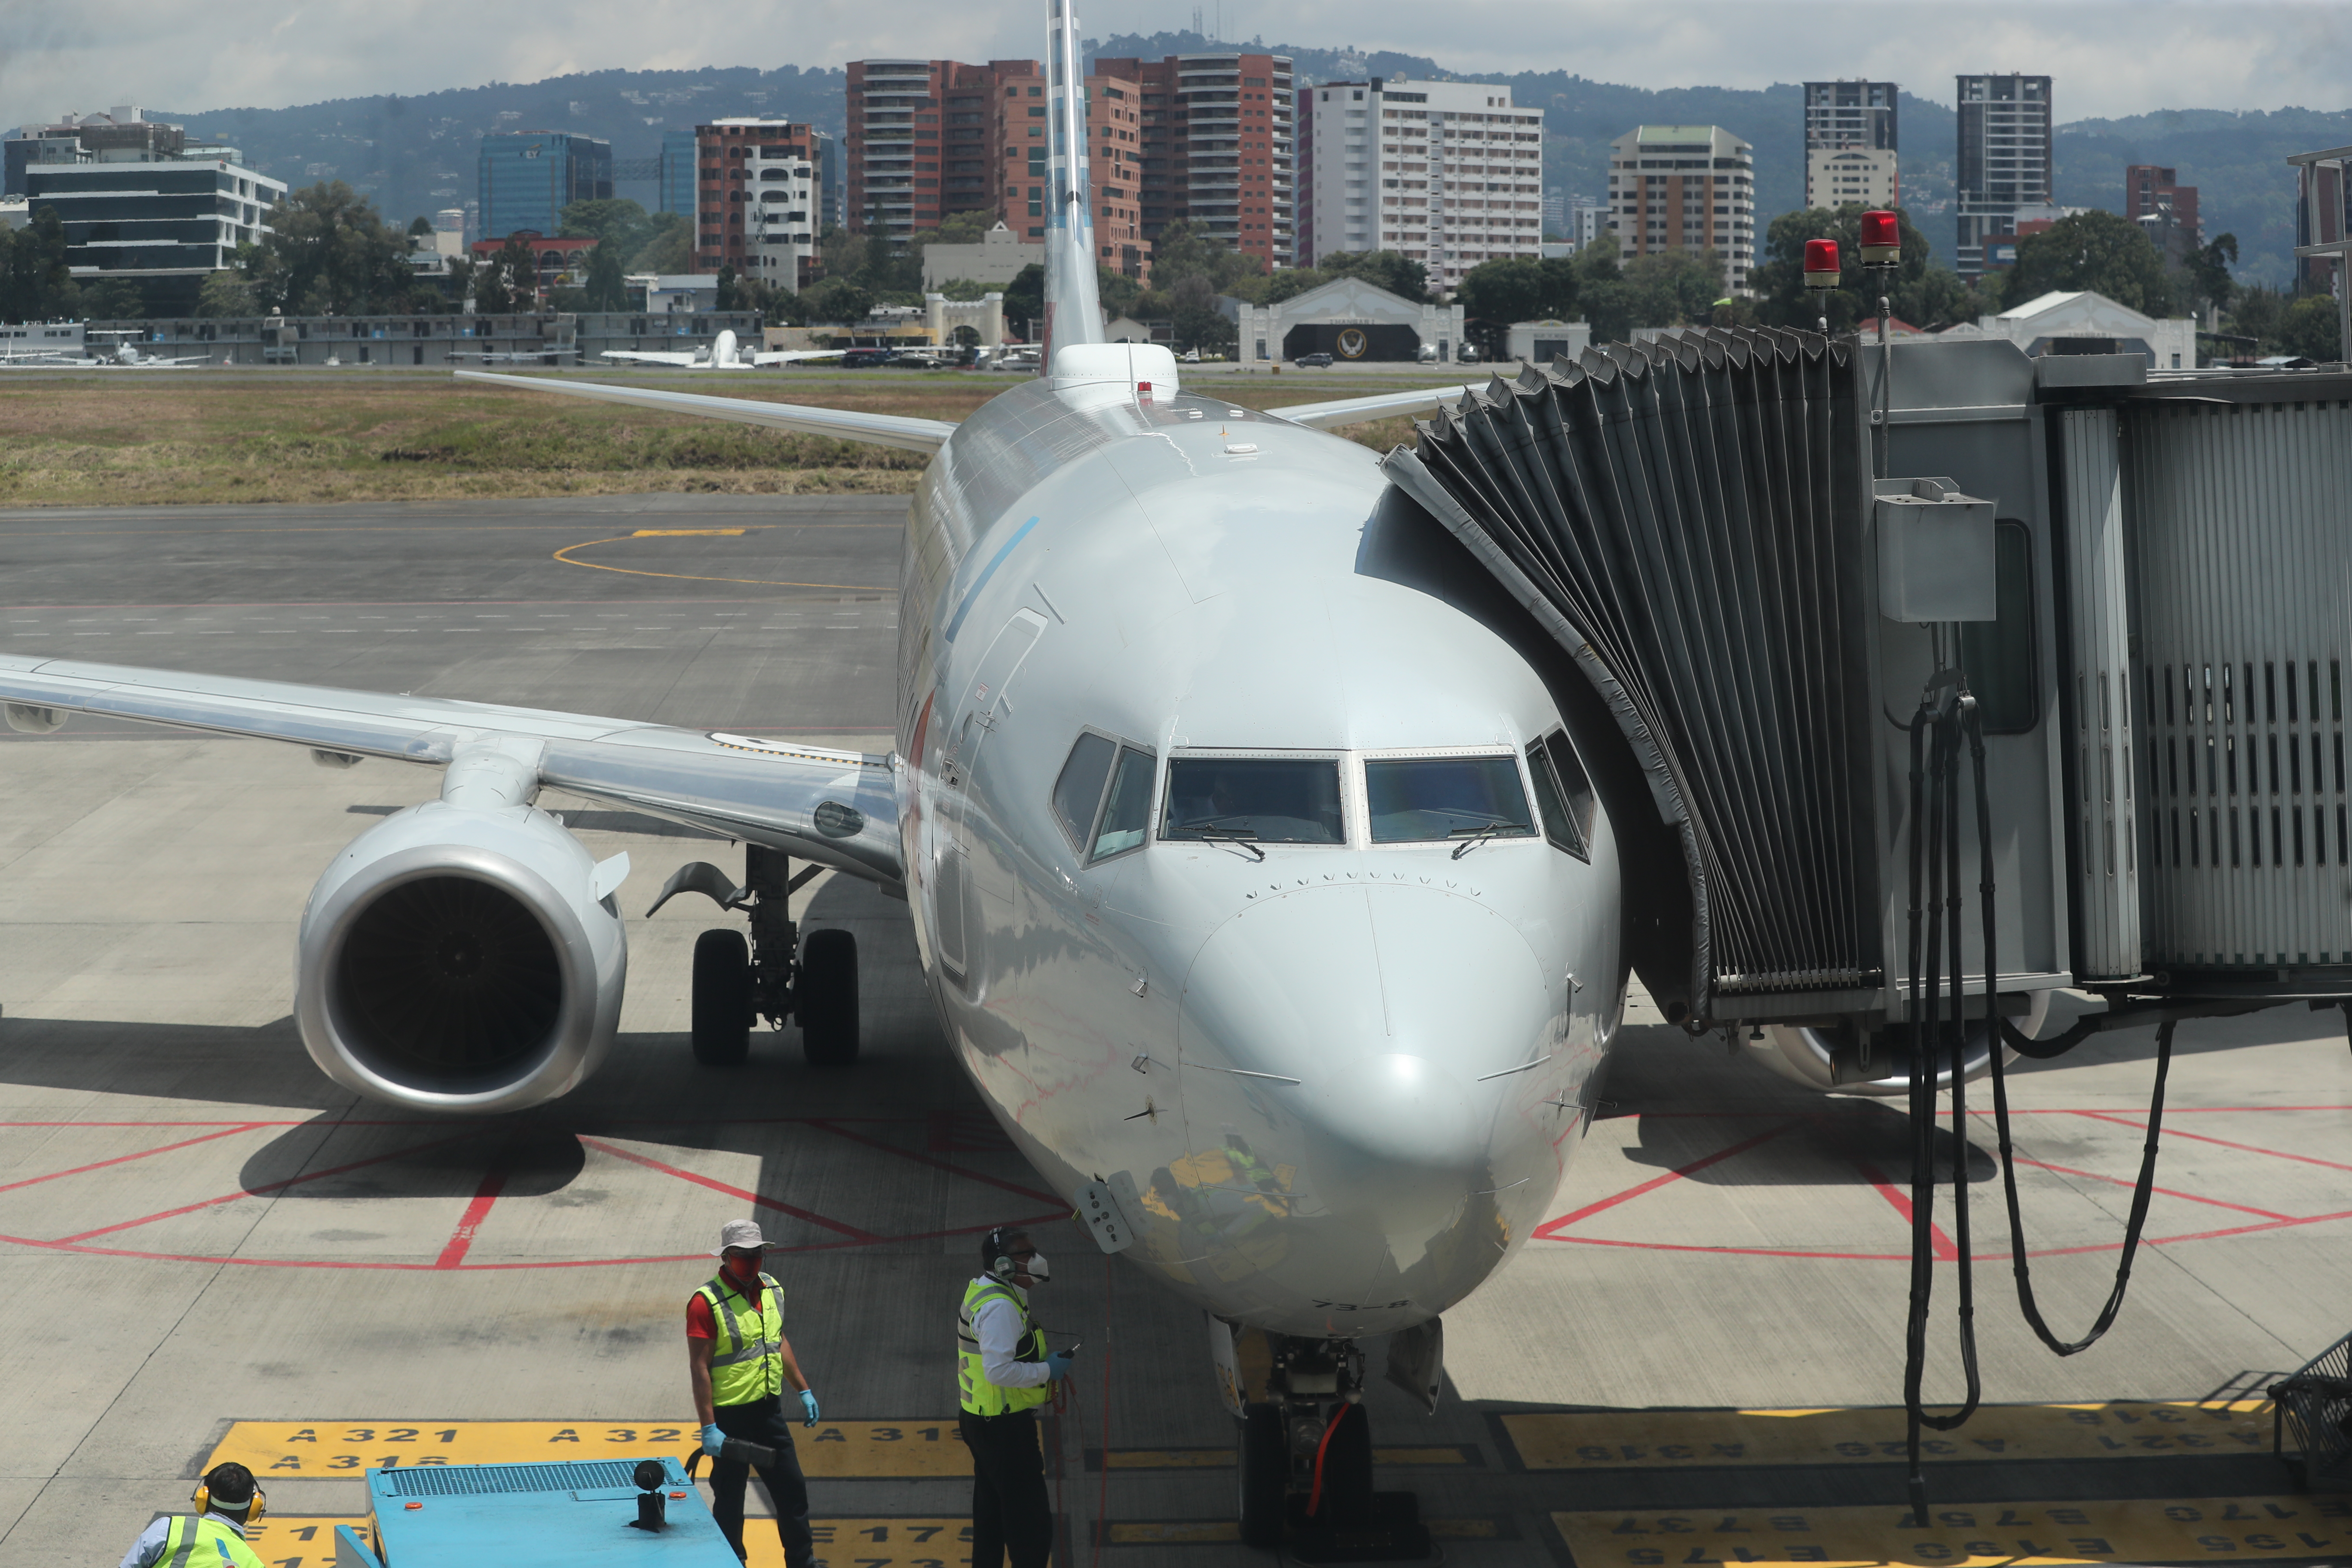 Aeropuerto internacional La Aurora recibe el segundo vuelo internacional luego de 6 meses de inactividad por la pandemia del coronavirus.

Fotografa. Erick Avila:        18092020